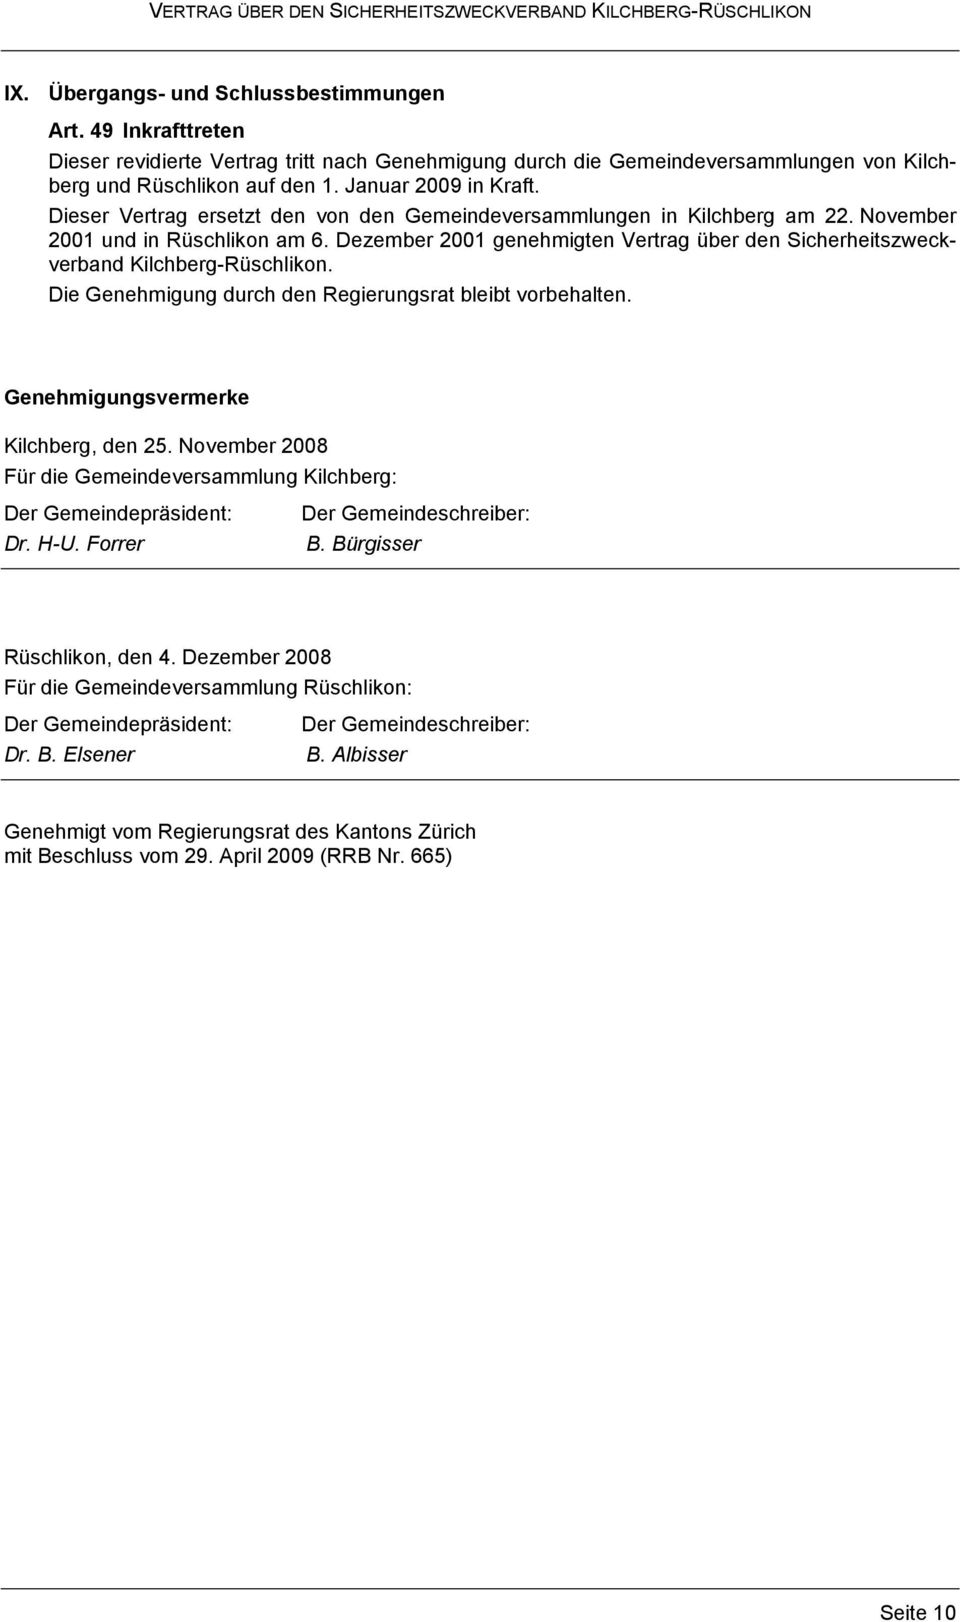 Dezember 2001 genehmigten Vertrag über den Sicherheitszweckverband Kilchberg-Rüschlikon. Die Genehmigung durch den Regierungsrat bleibt vorbehalten. Genehmigungsvermerke Kilchberg, den 25.